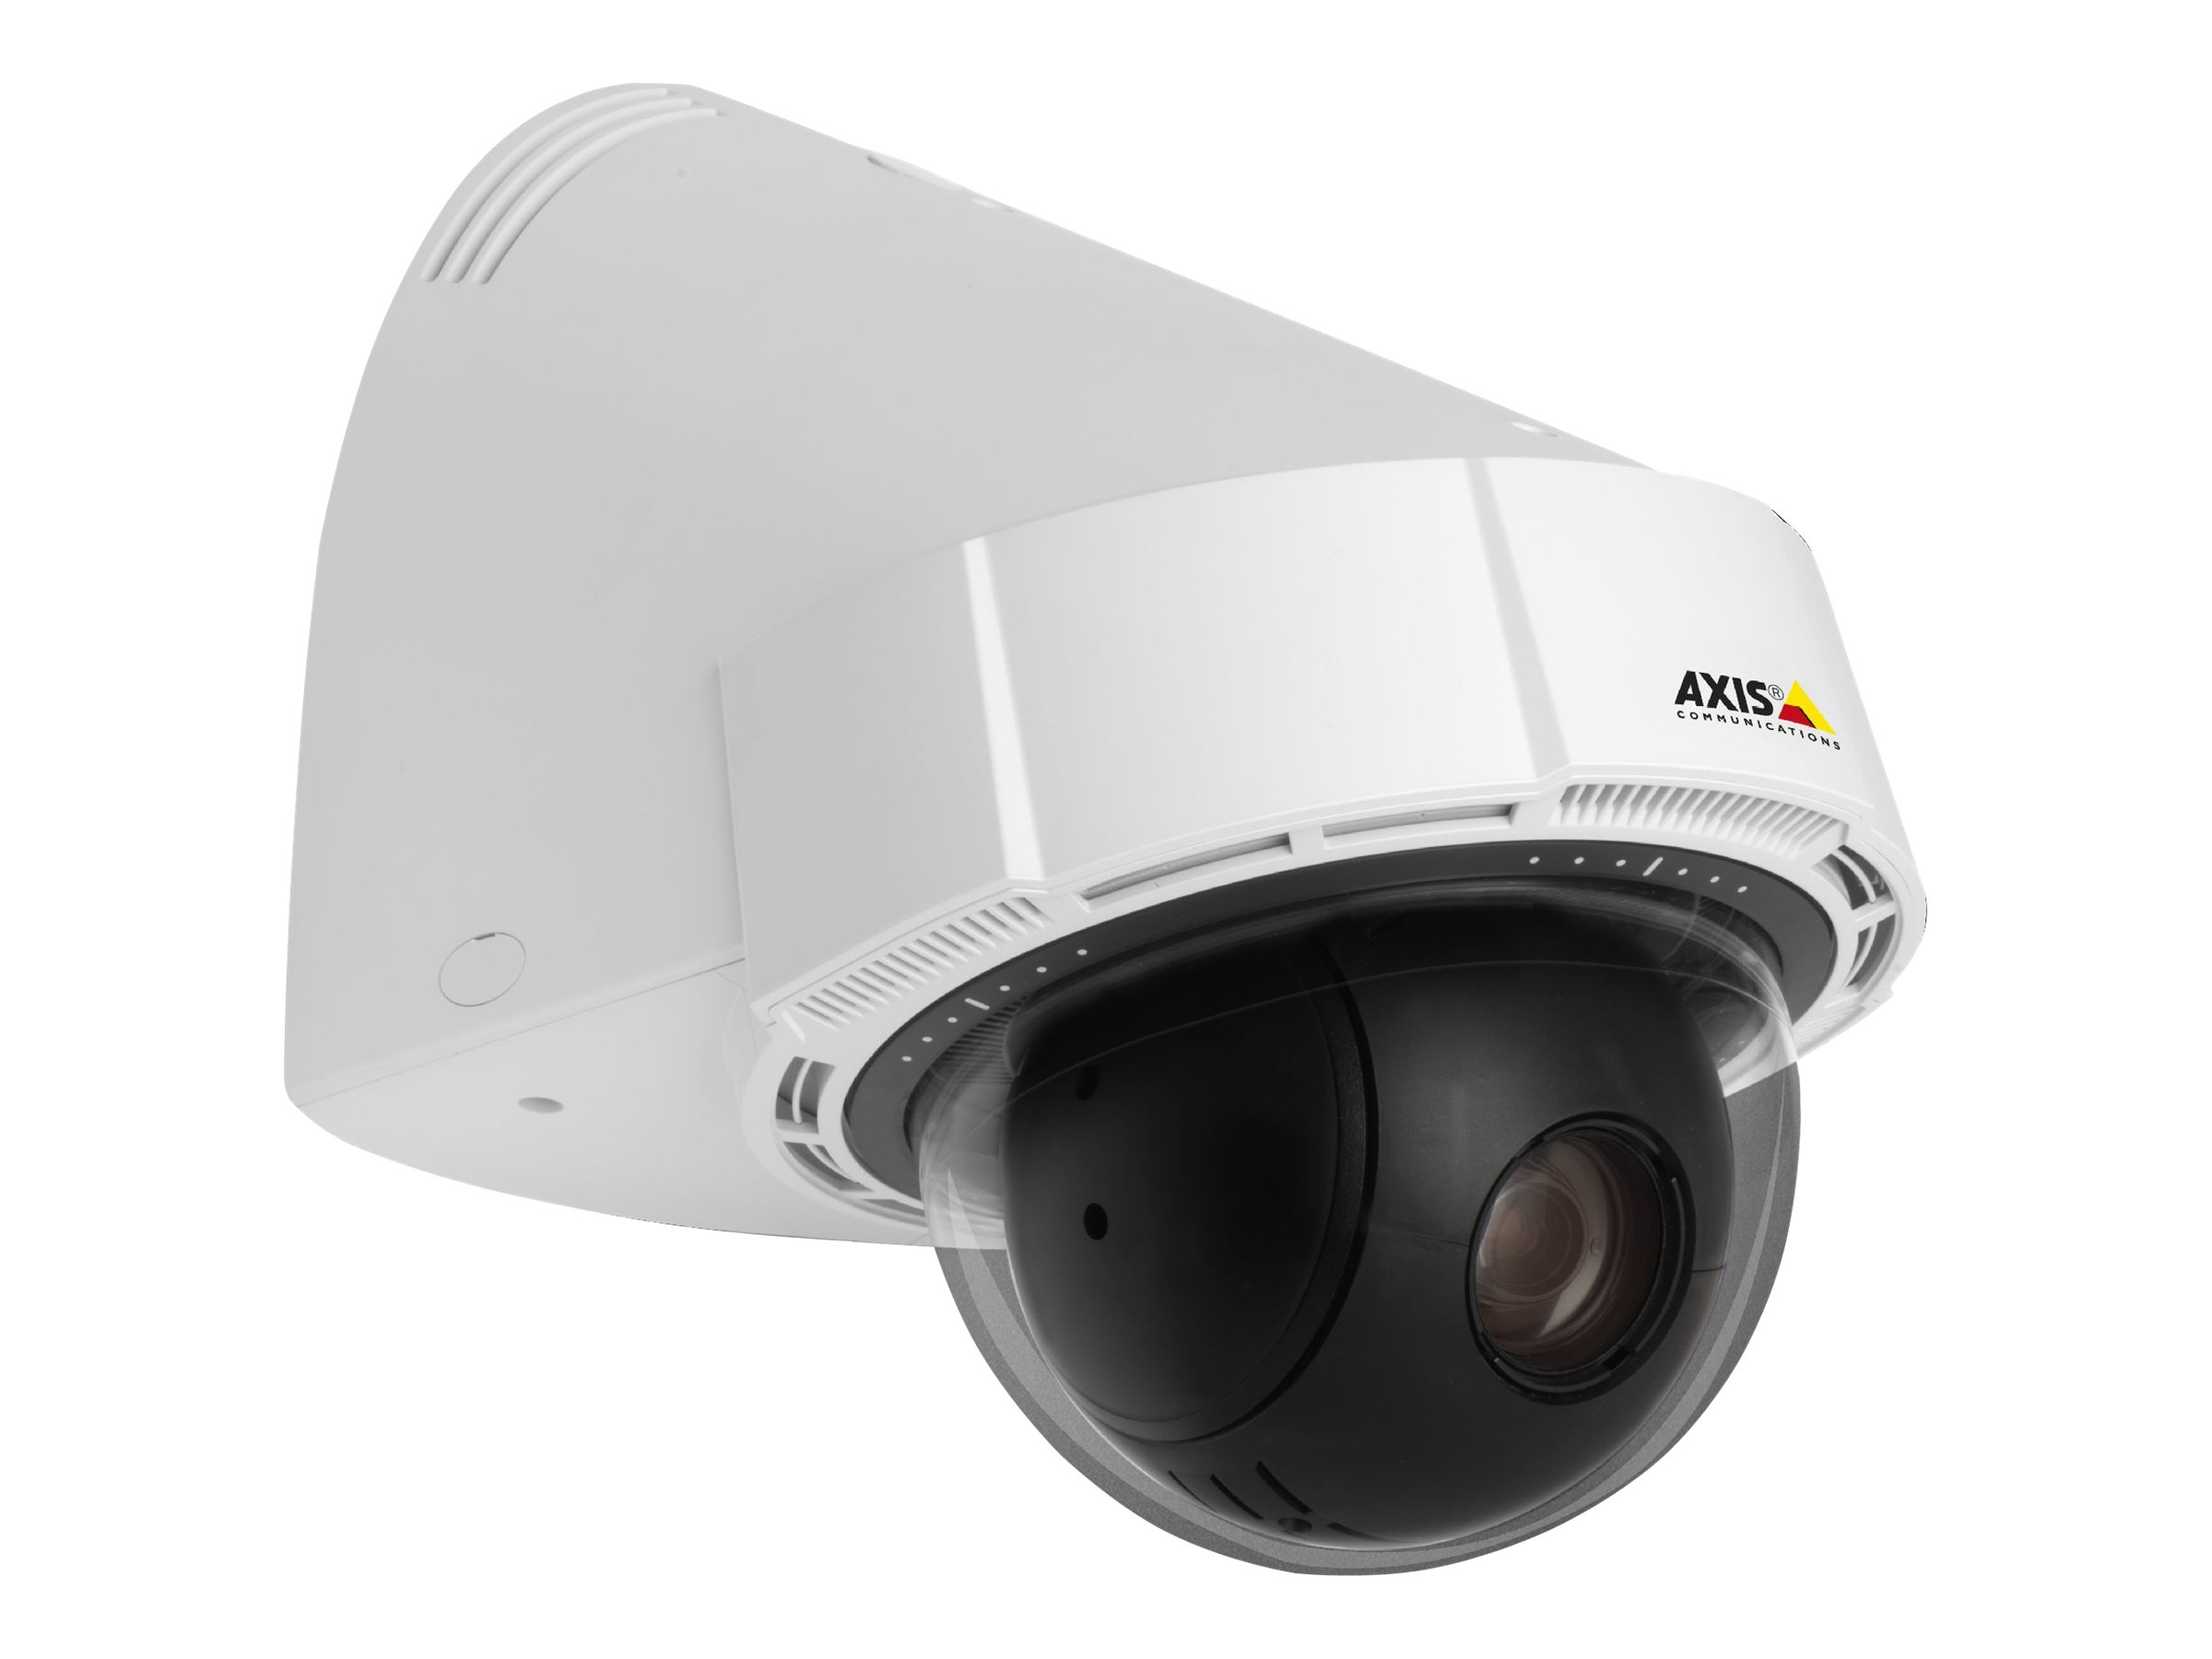 AXIS P5415-E PTZ Dome Network Camera 50 Hz - Netzwerk-Überwachungskamera - PTZ - Aussenbereich - vandalismusresistent/wasserfest